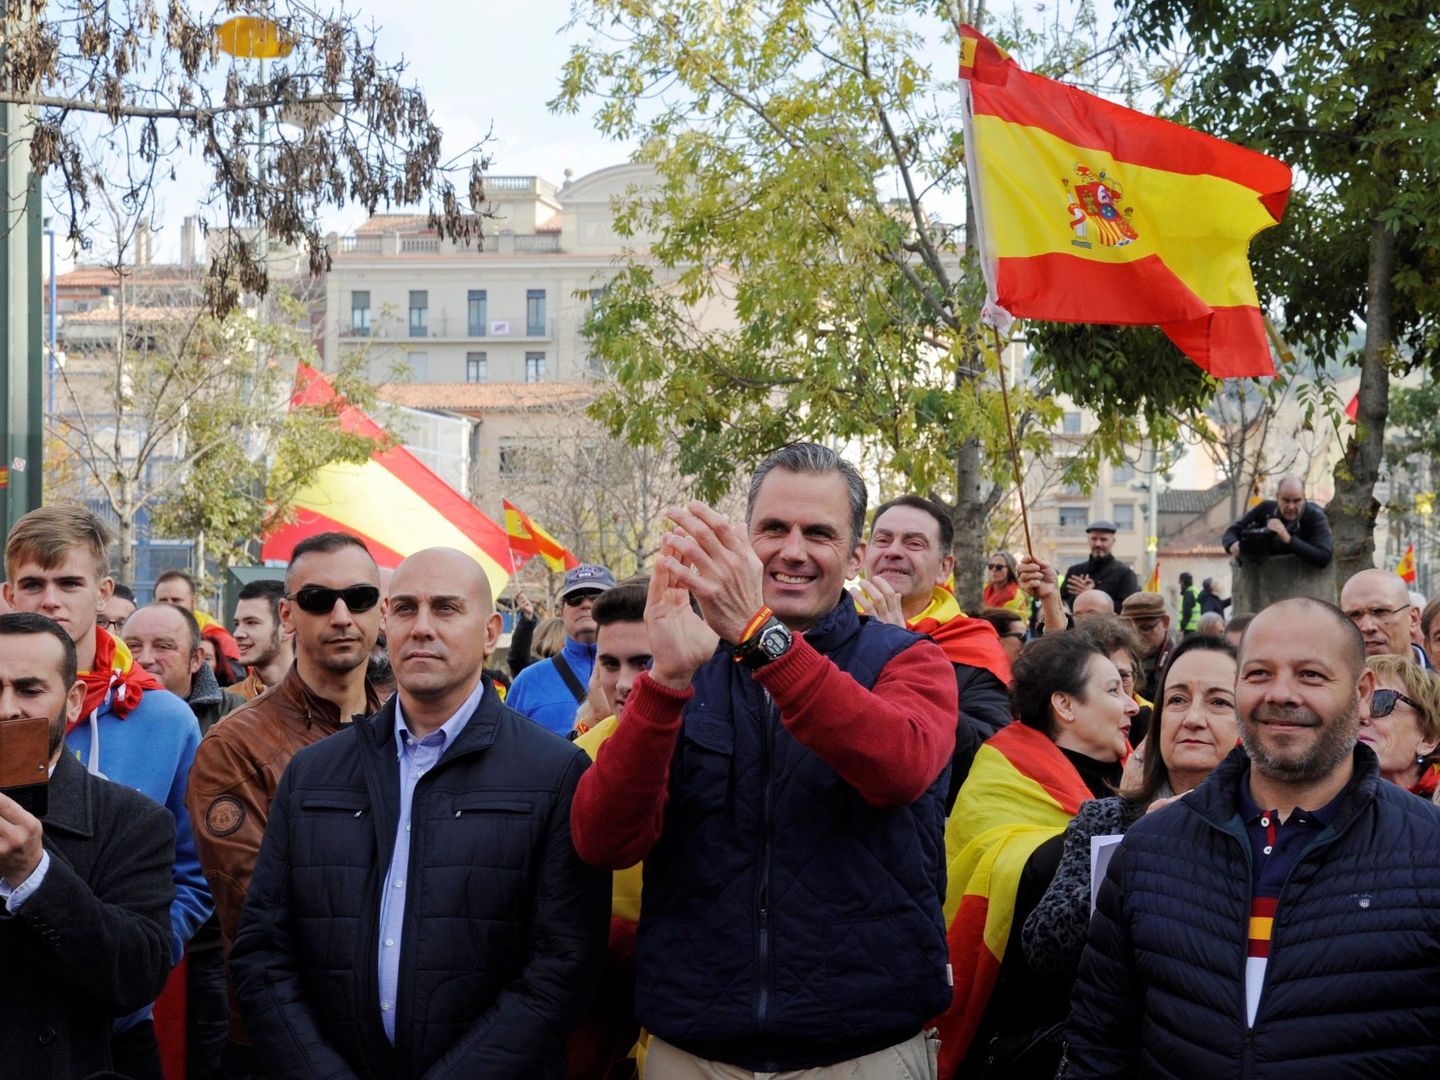 El secretario general de Vox, Javier Ortega Smith (en el centro de la imagen), participó en el acto conmemorativo del 40 aniversario de la Constitución convocado en Girona. (EFE)